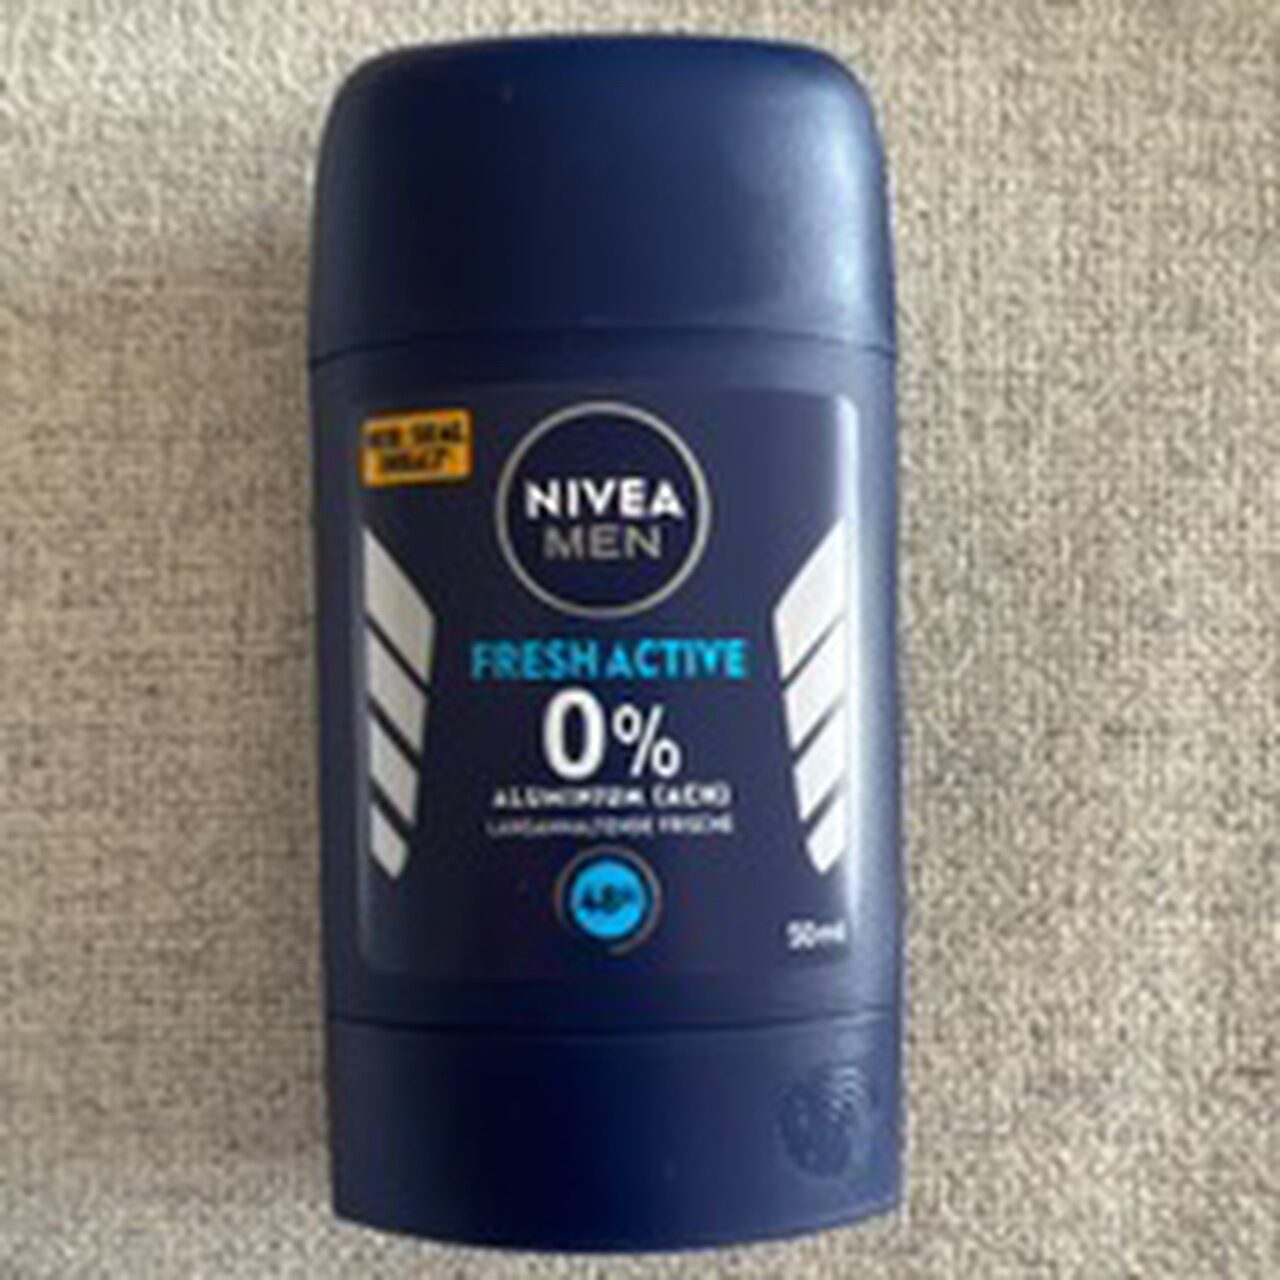 Nivea Fresh active - Product - de